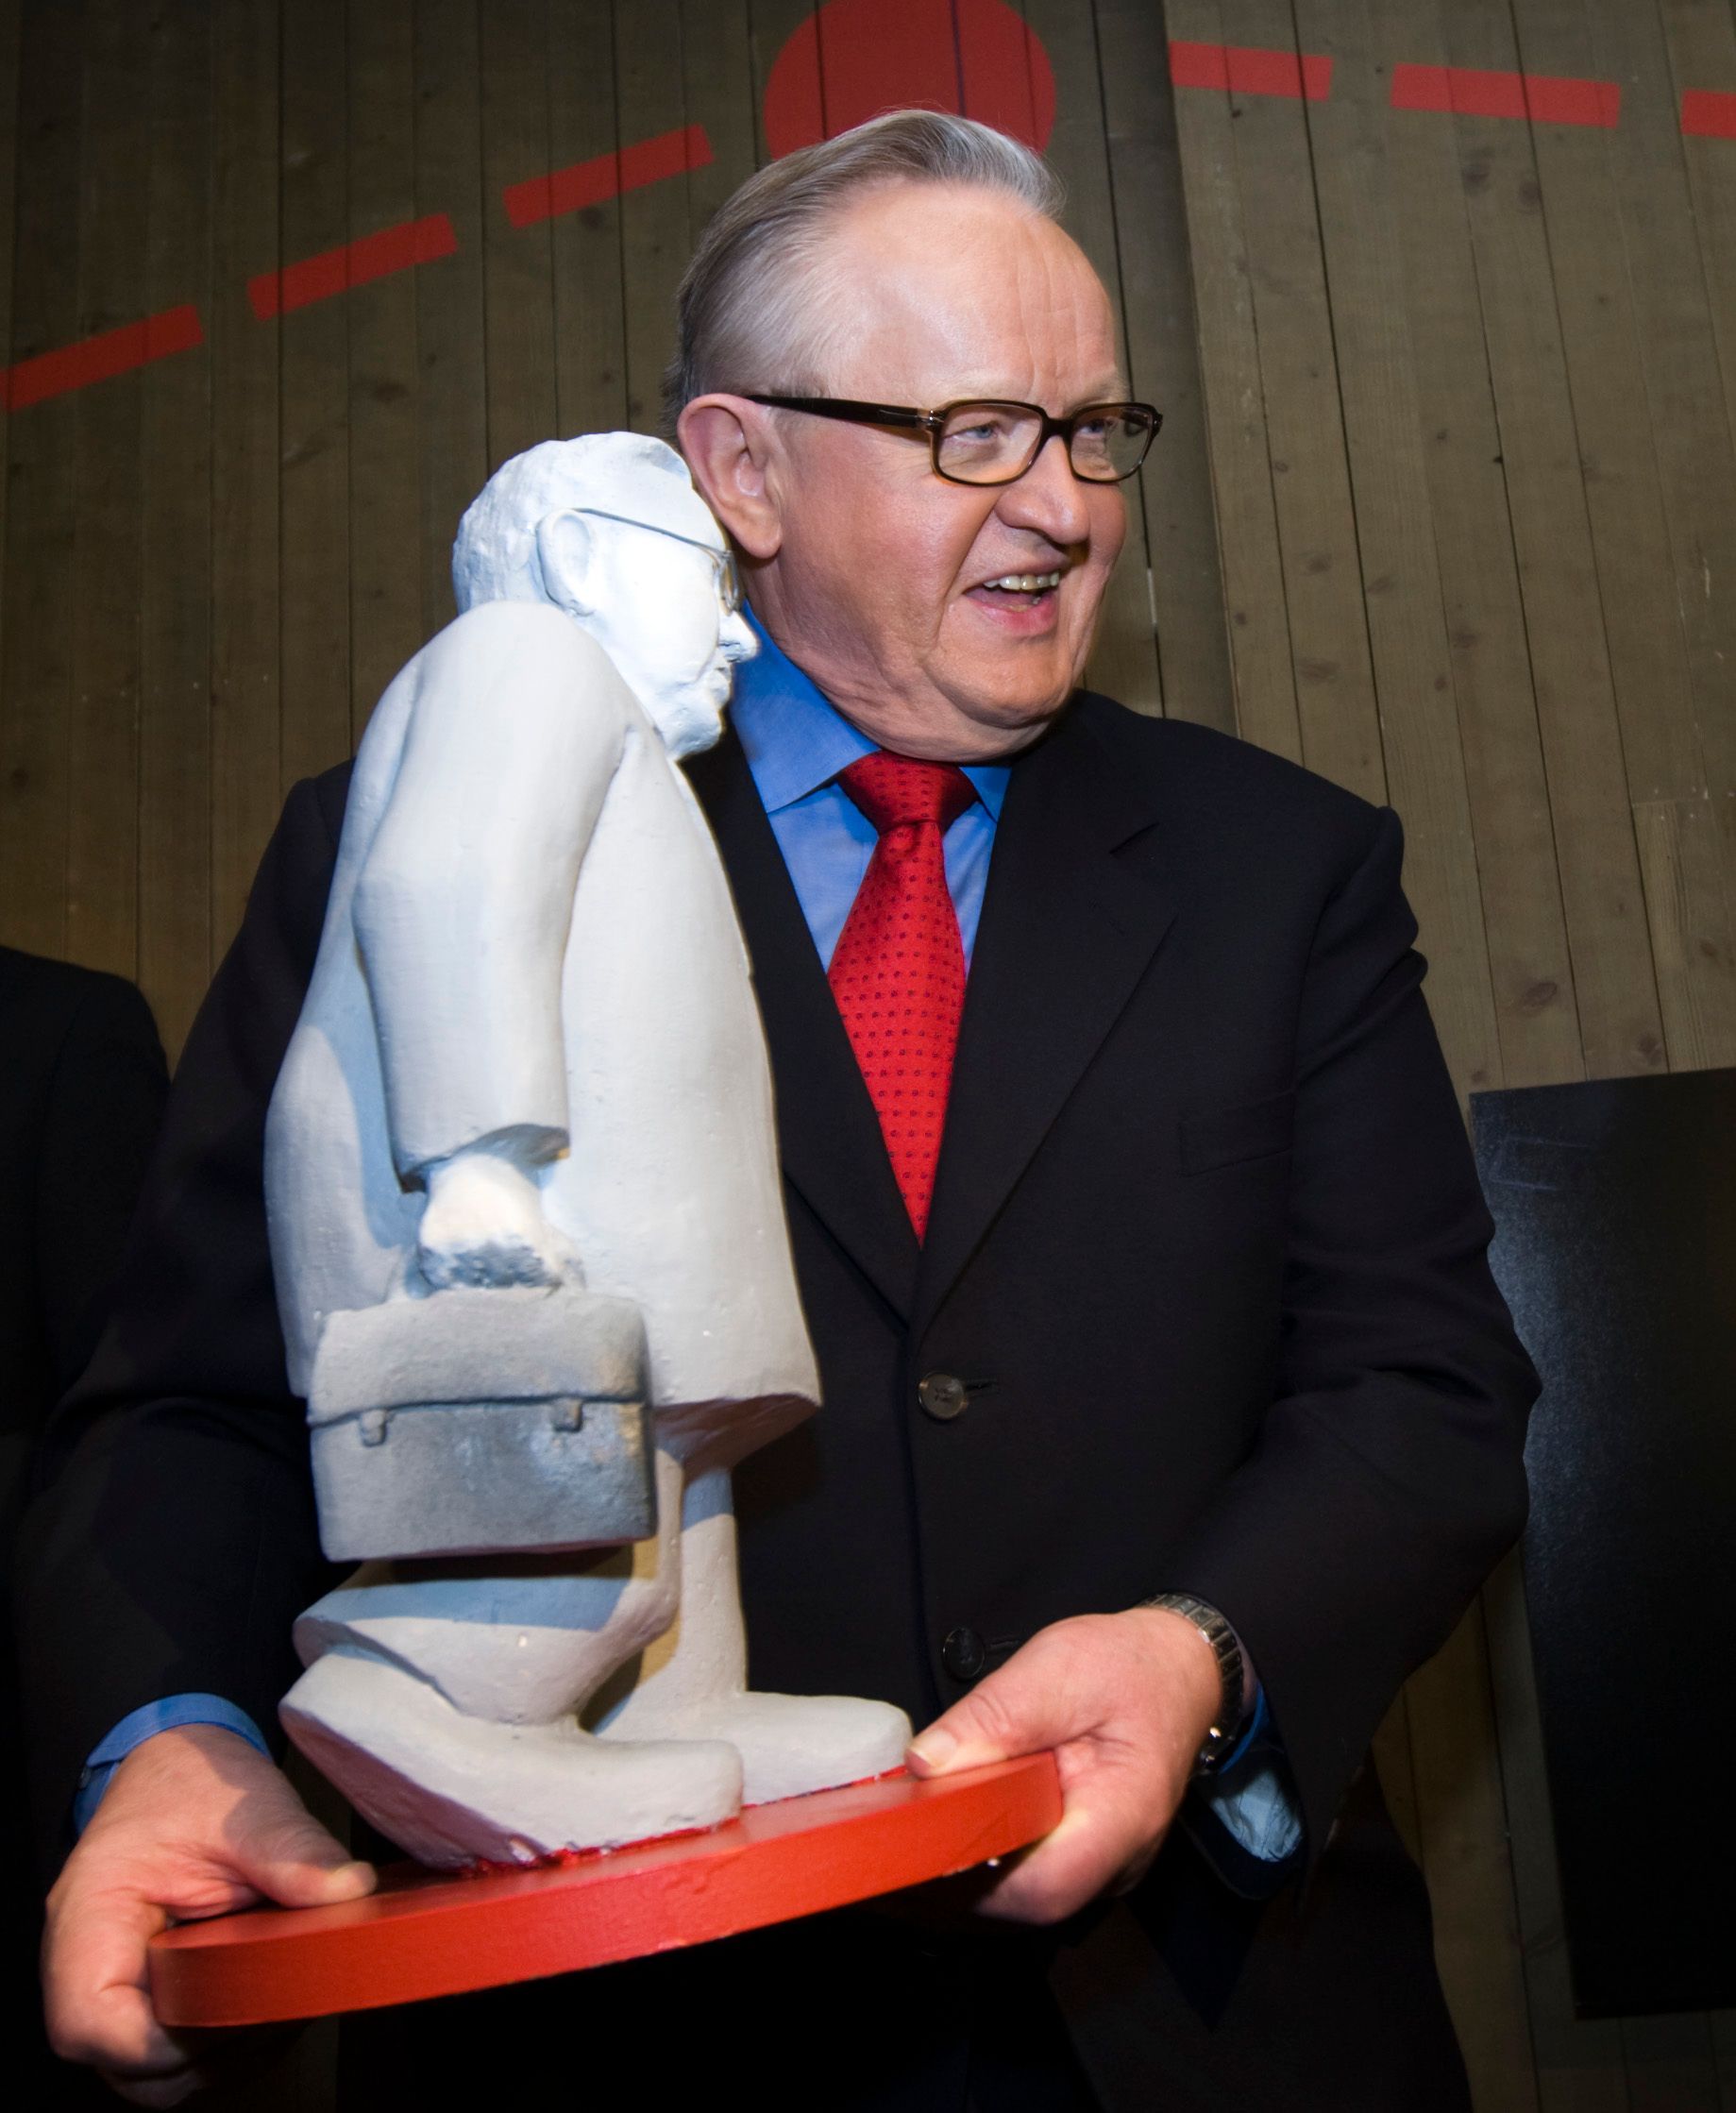 Martti Ahtisaar som holder mini statue av seg selv